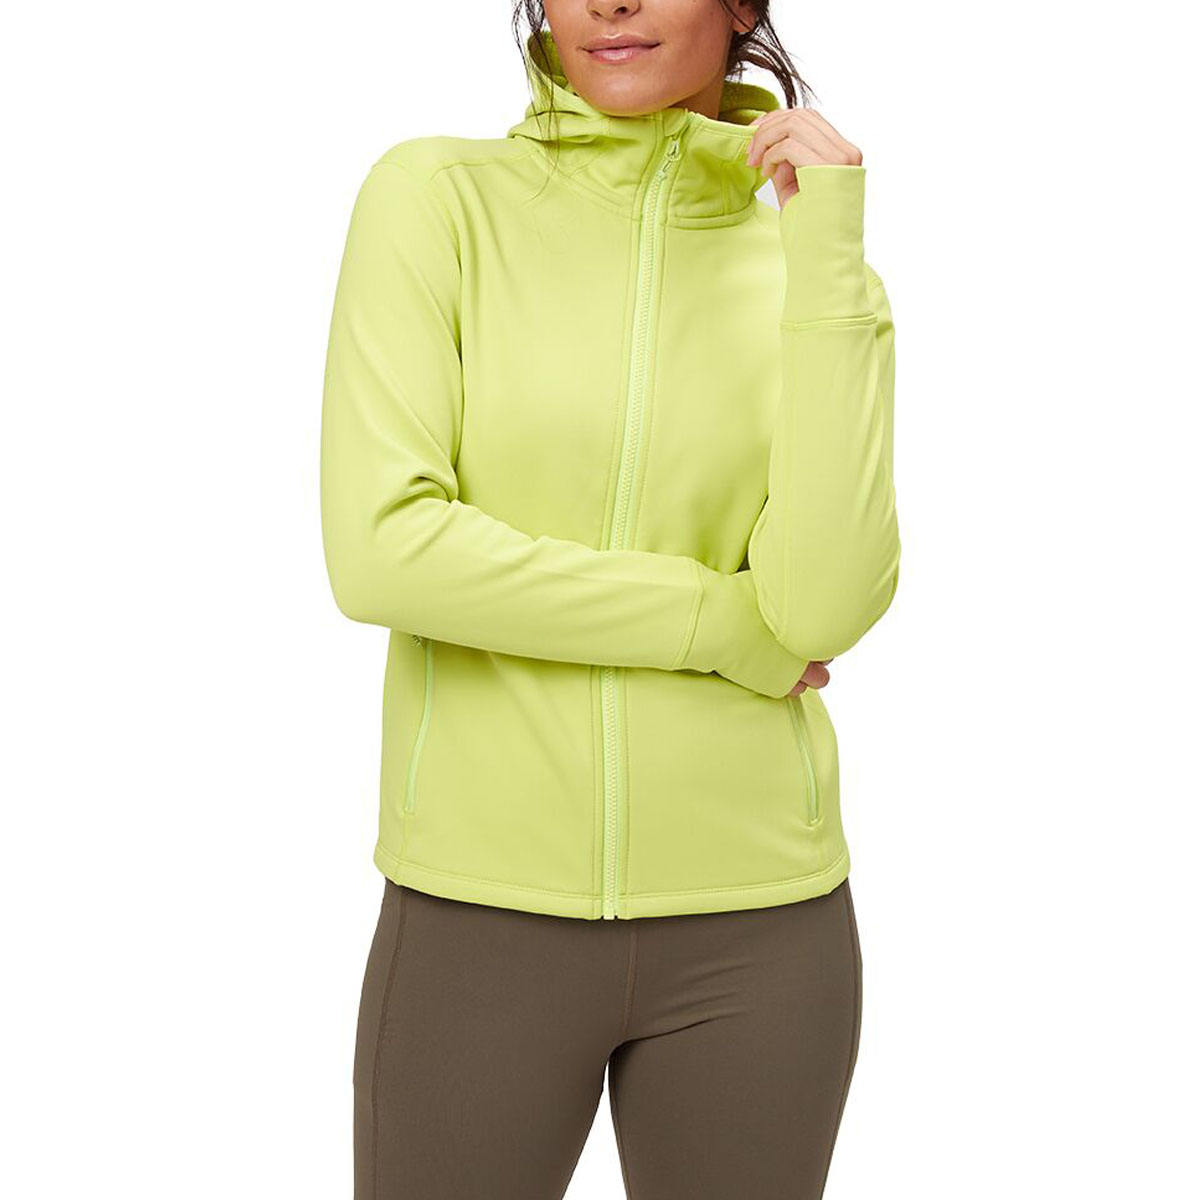 信頼性の高い女性用フリースジャケット、固定フード付き、通気性のあるソフトシェルスポーツジャケット